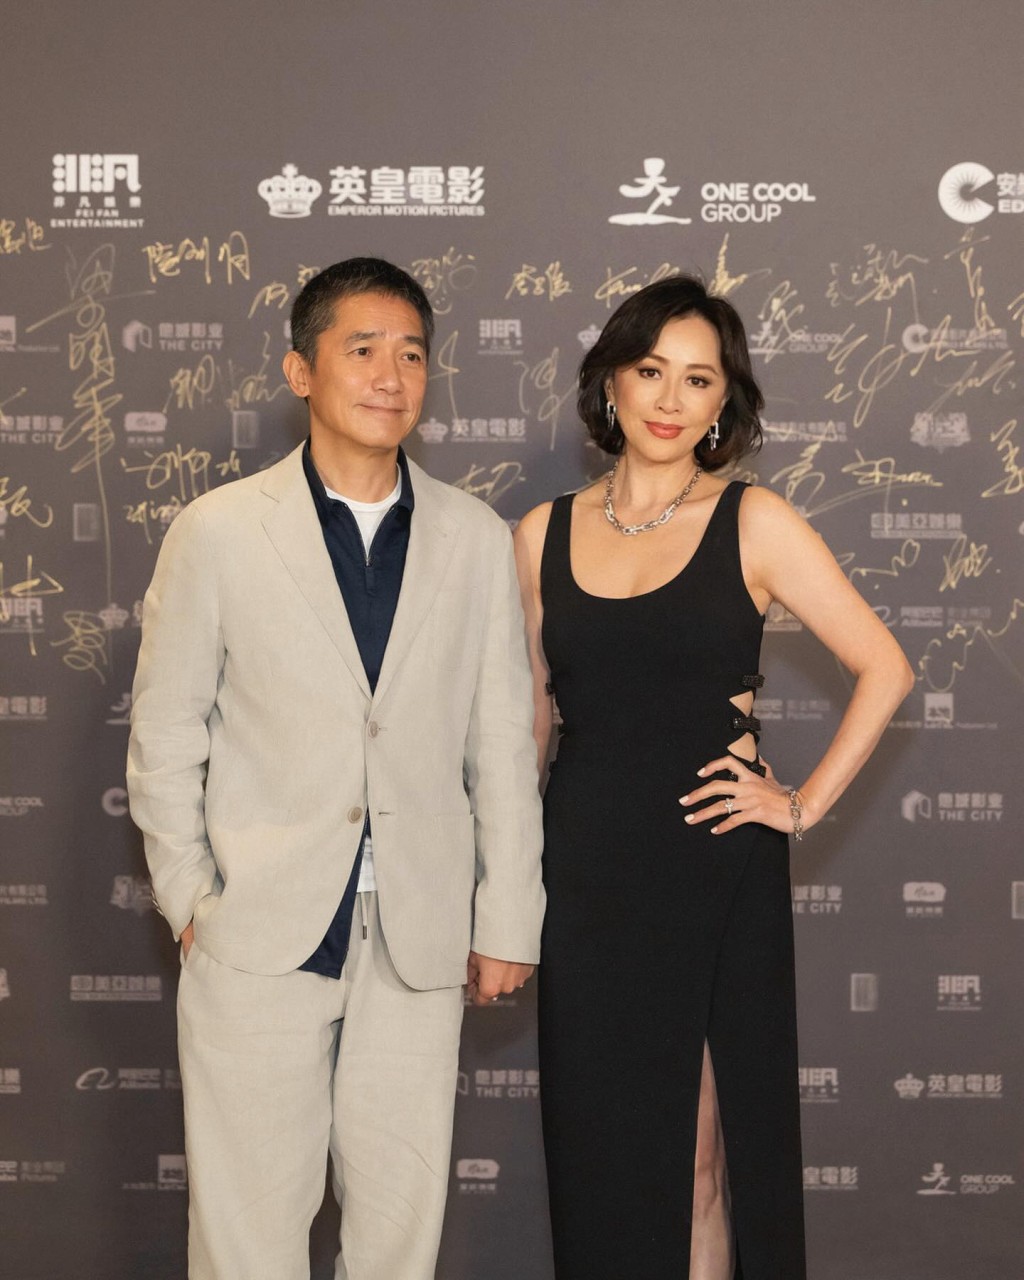 梁朝偉在導演會頒獎禮上憑《金手指》奪得「最佳男主角」， ​劉嘉玲陪伴老公出席外，還擔任頒獎嘉賓。  ​